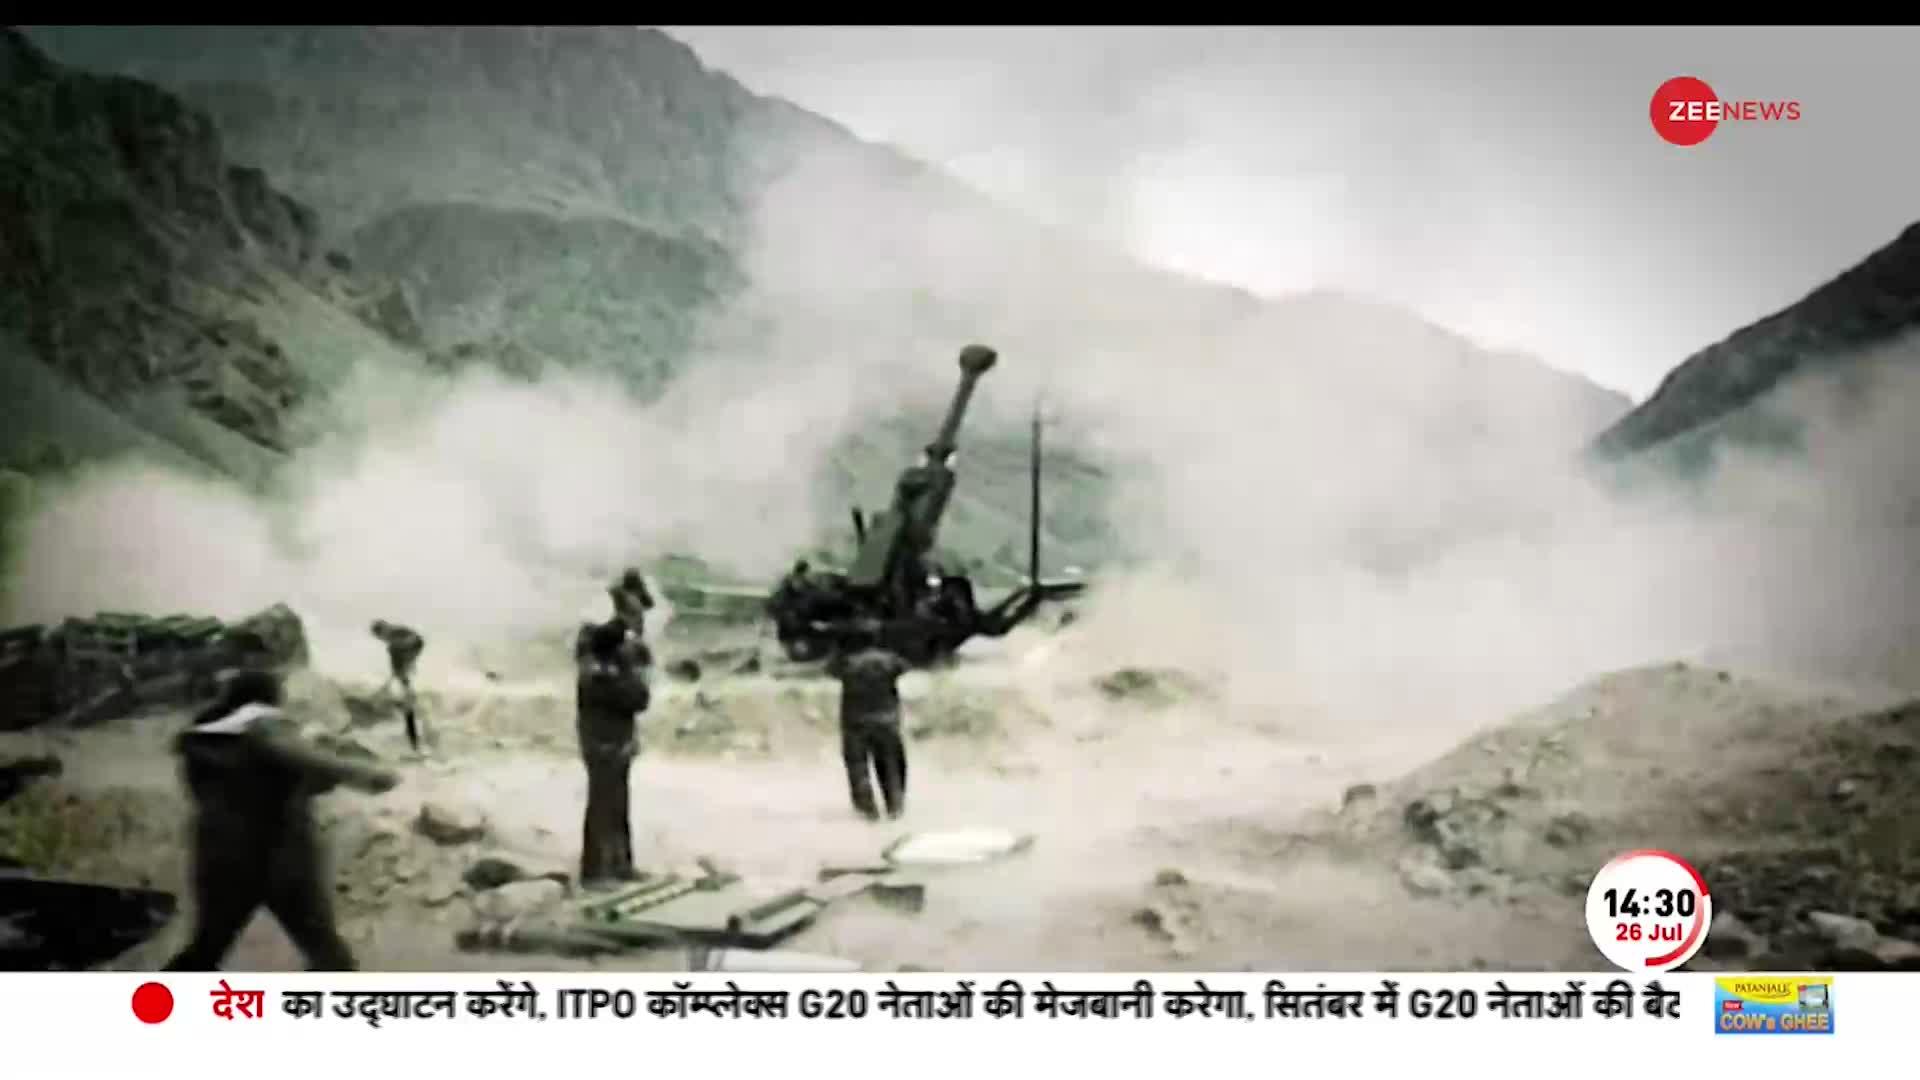 देखें कारगिल युद्ध की वजय गाथा! जब Ladakh को Jammu-Kashmir से काटना चाहता था Pakistan